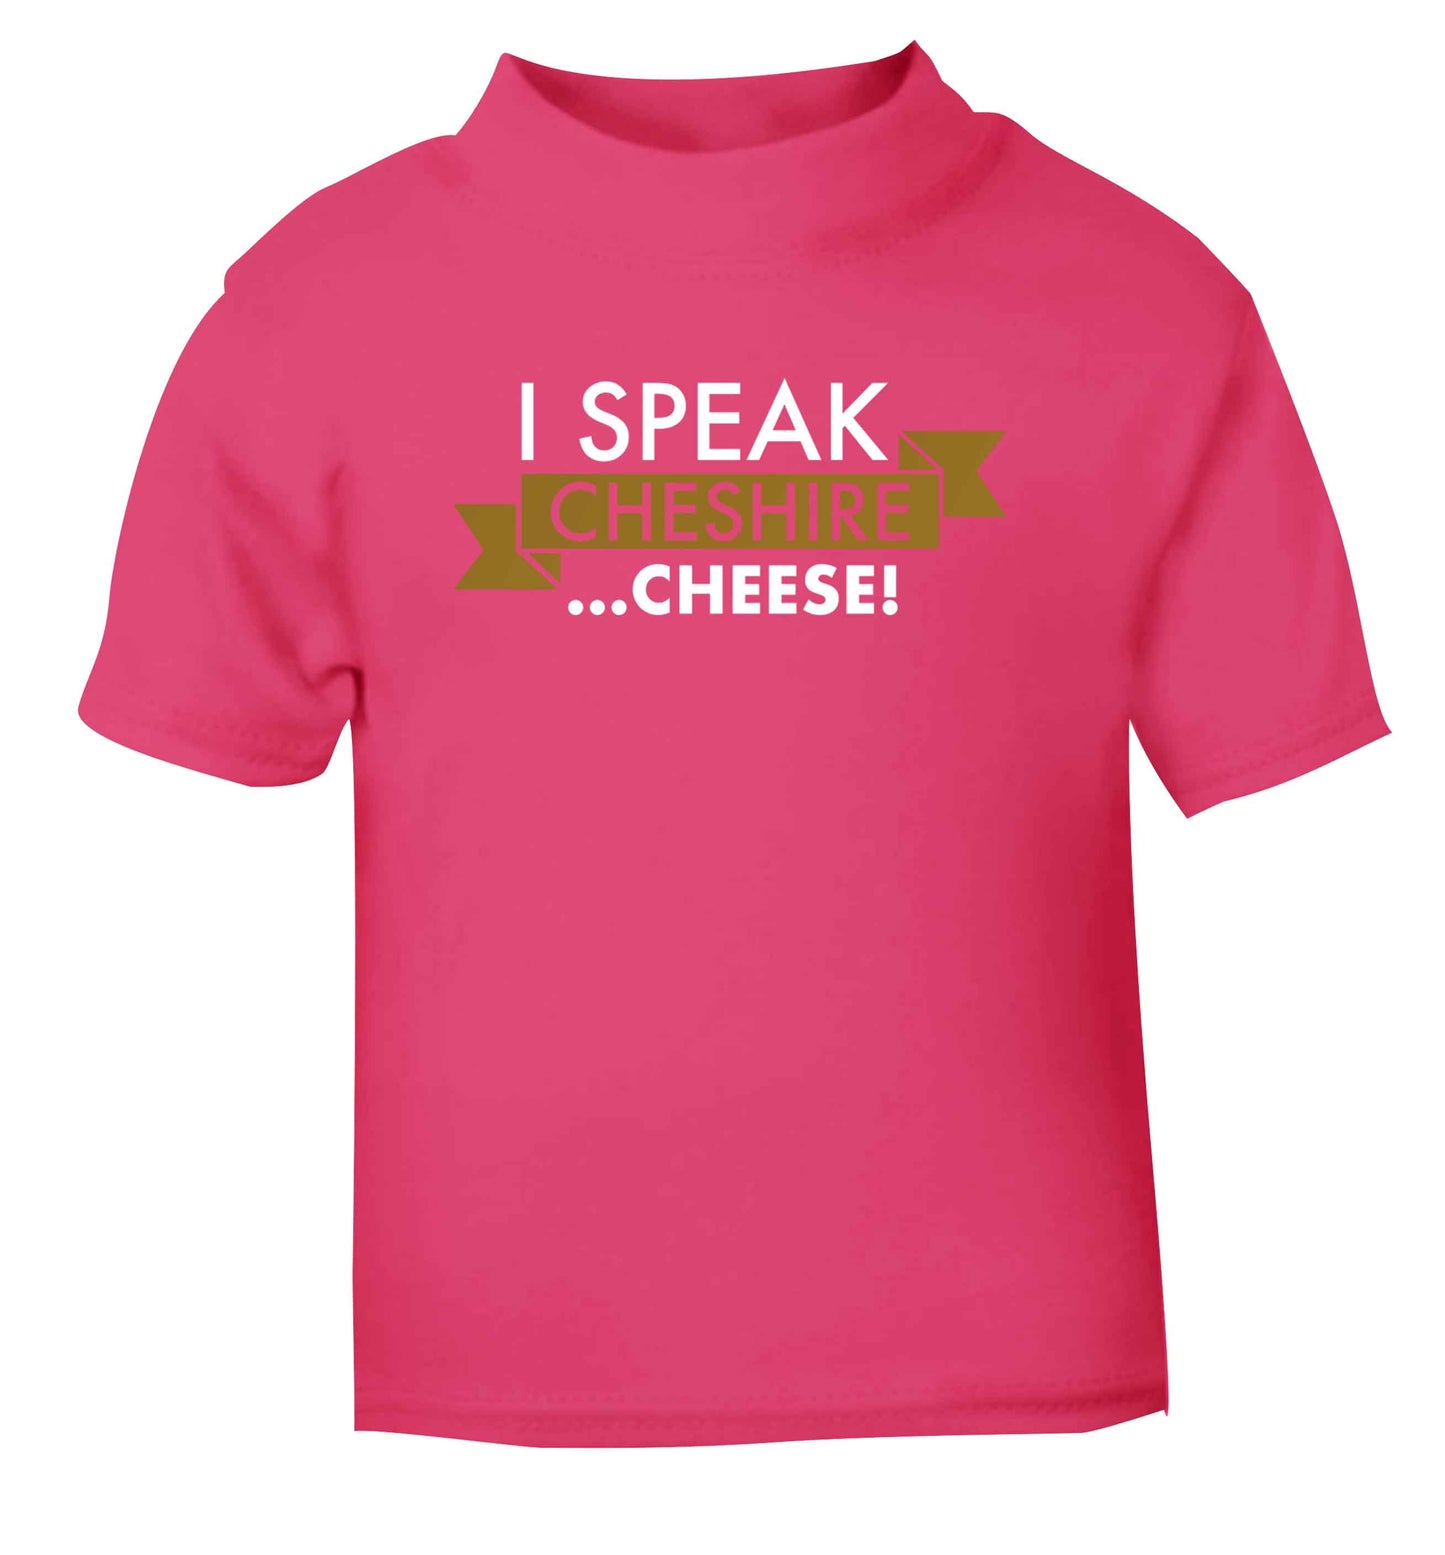 I speak Cheshire cheese pink Baby Toddler Tshirt 2 Years